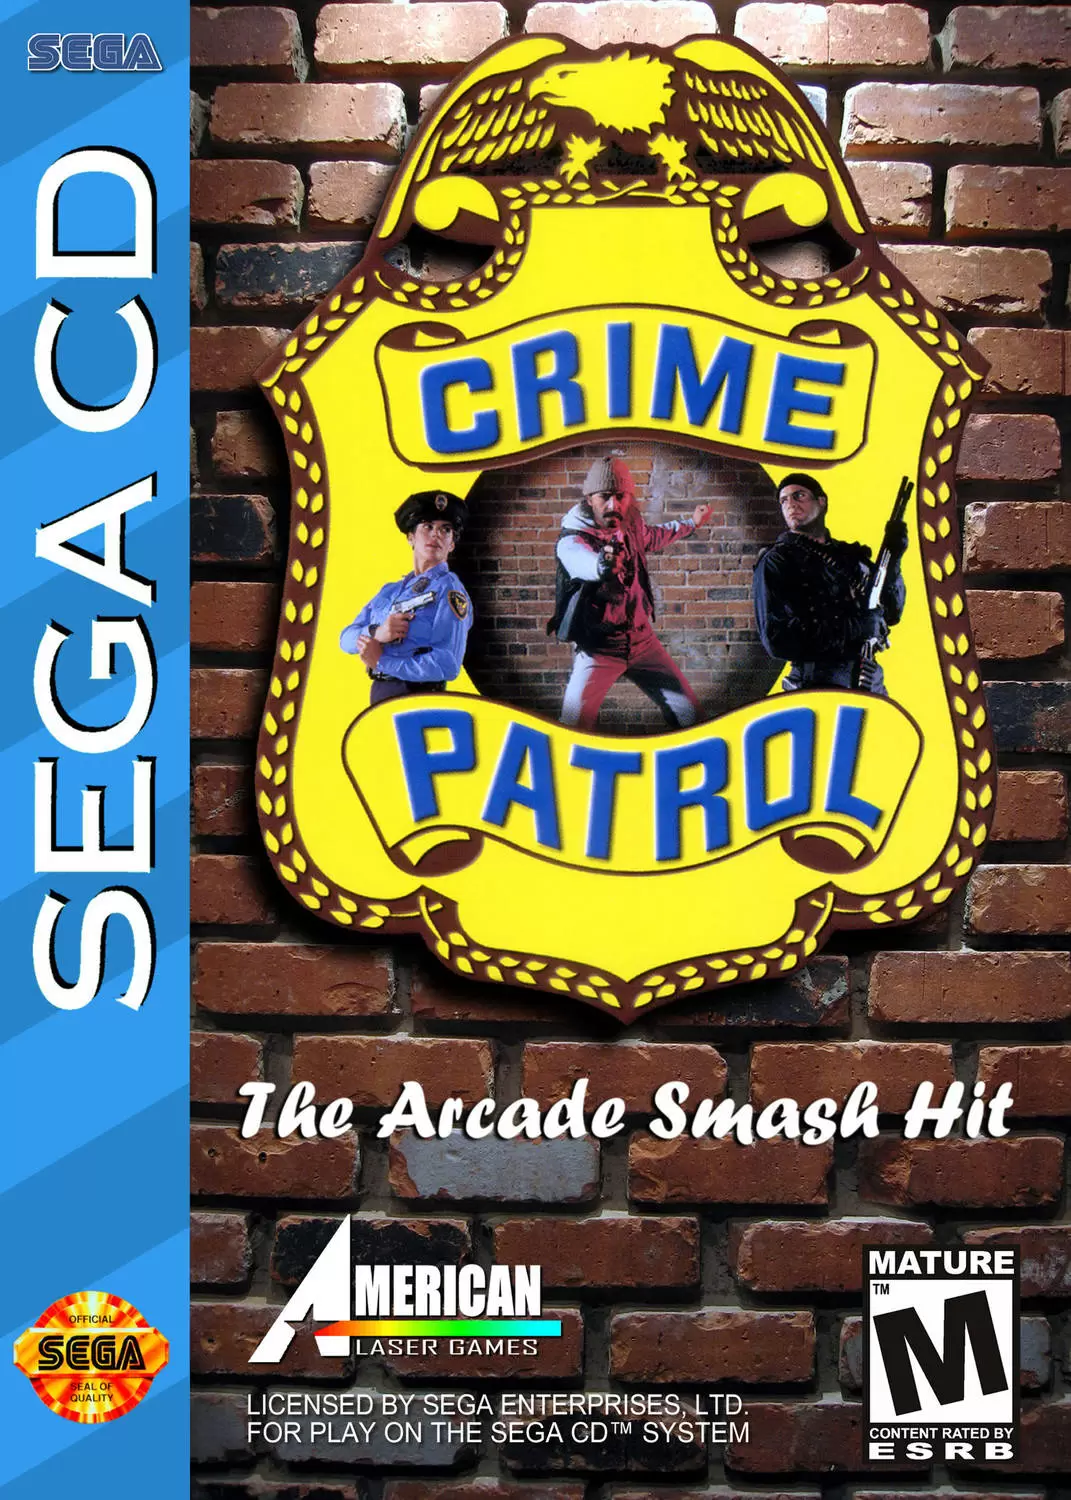 SEGA Mega CD Games - Crime Patrol